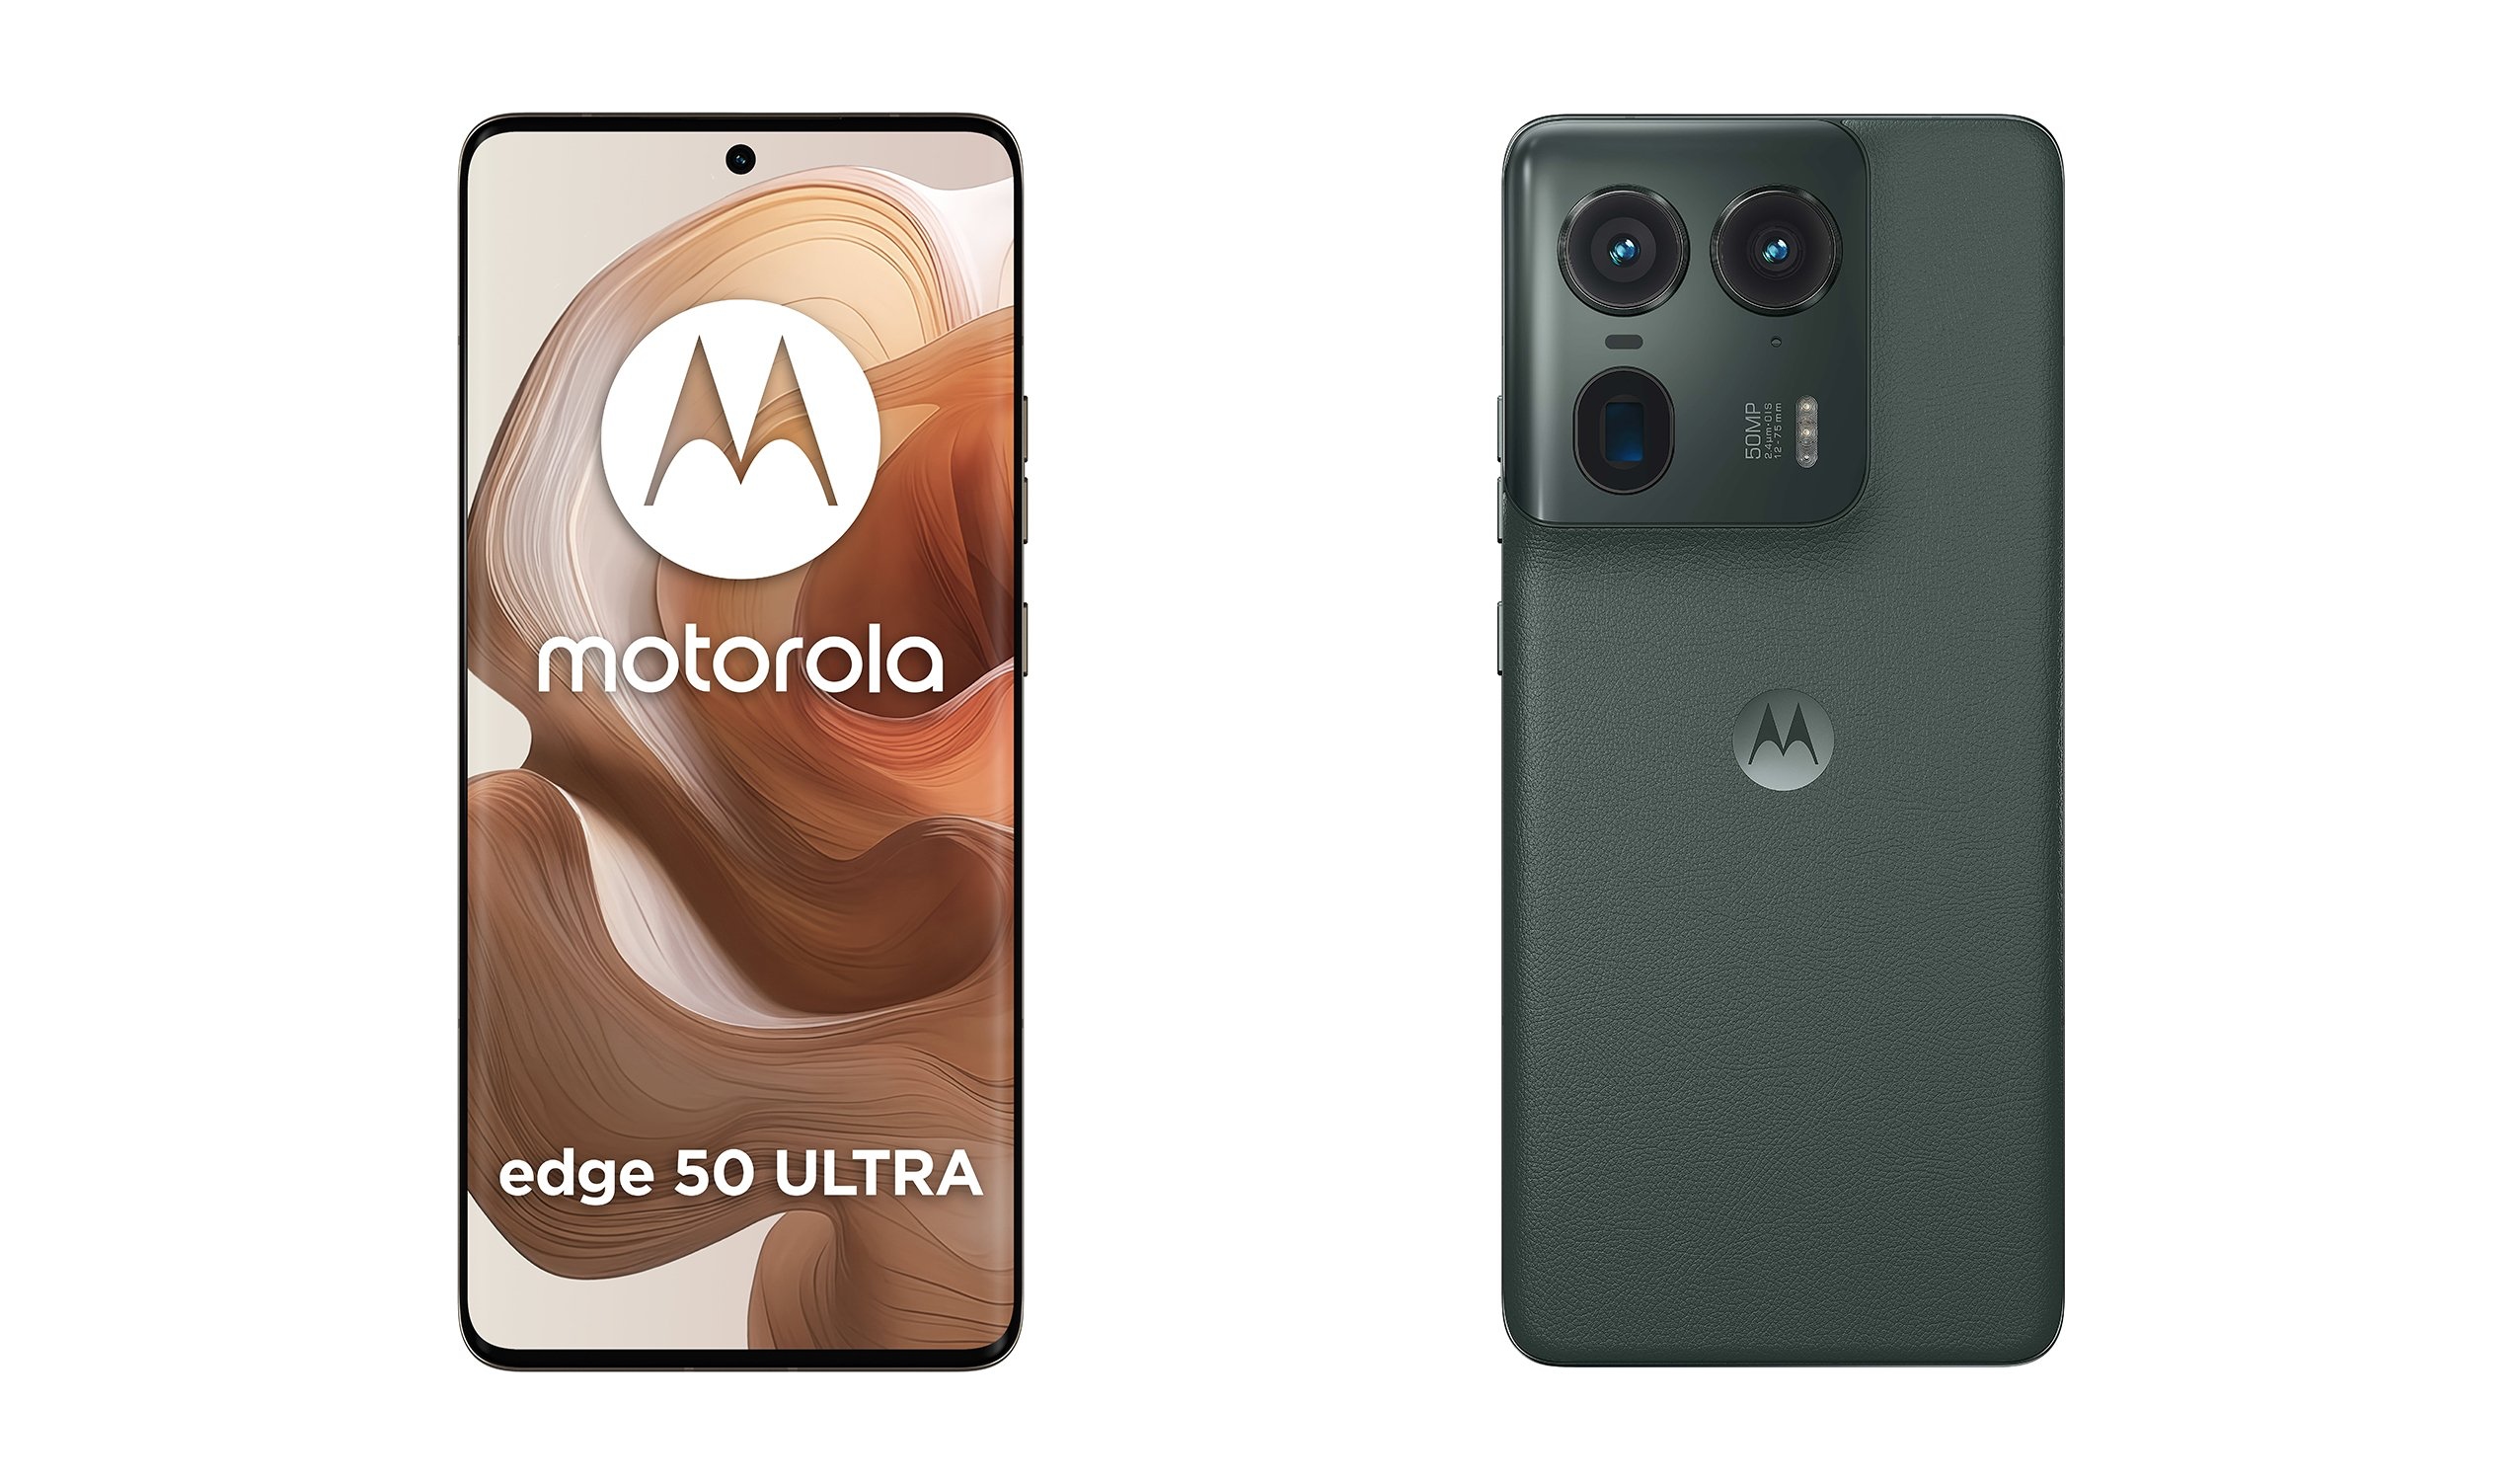 Böjd skärm och periskopkamera: insider avslöjar reklamvideor för flaggskeppet Motorola Edge 50 Ultra